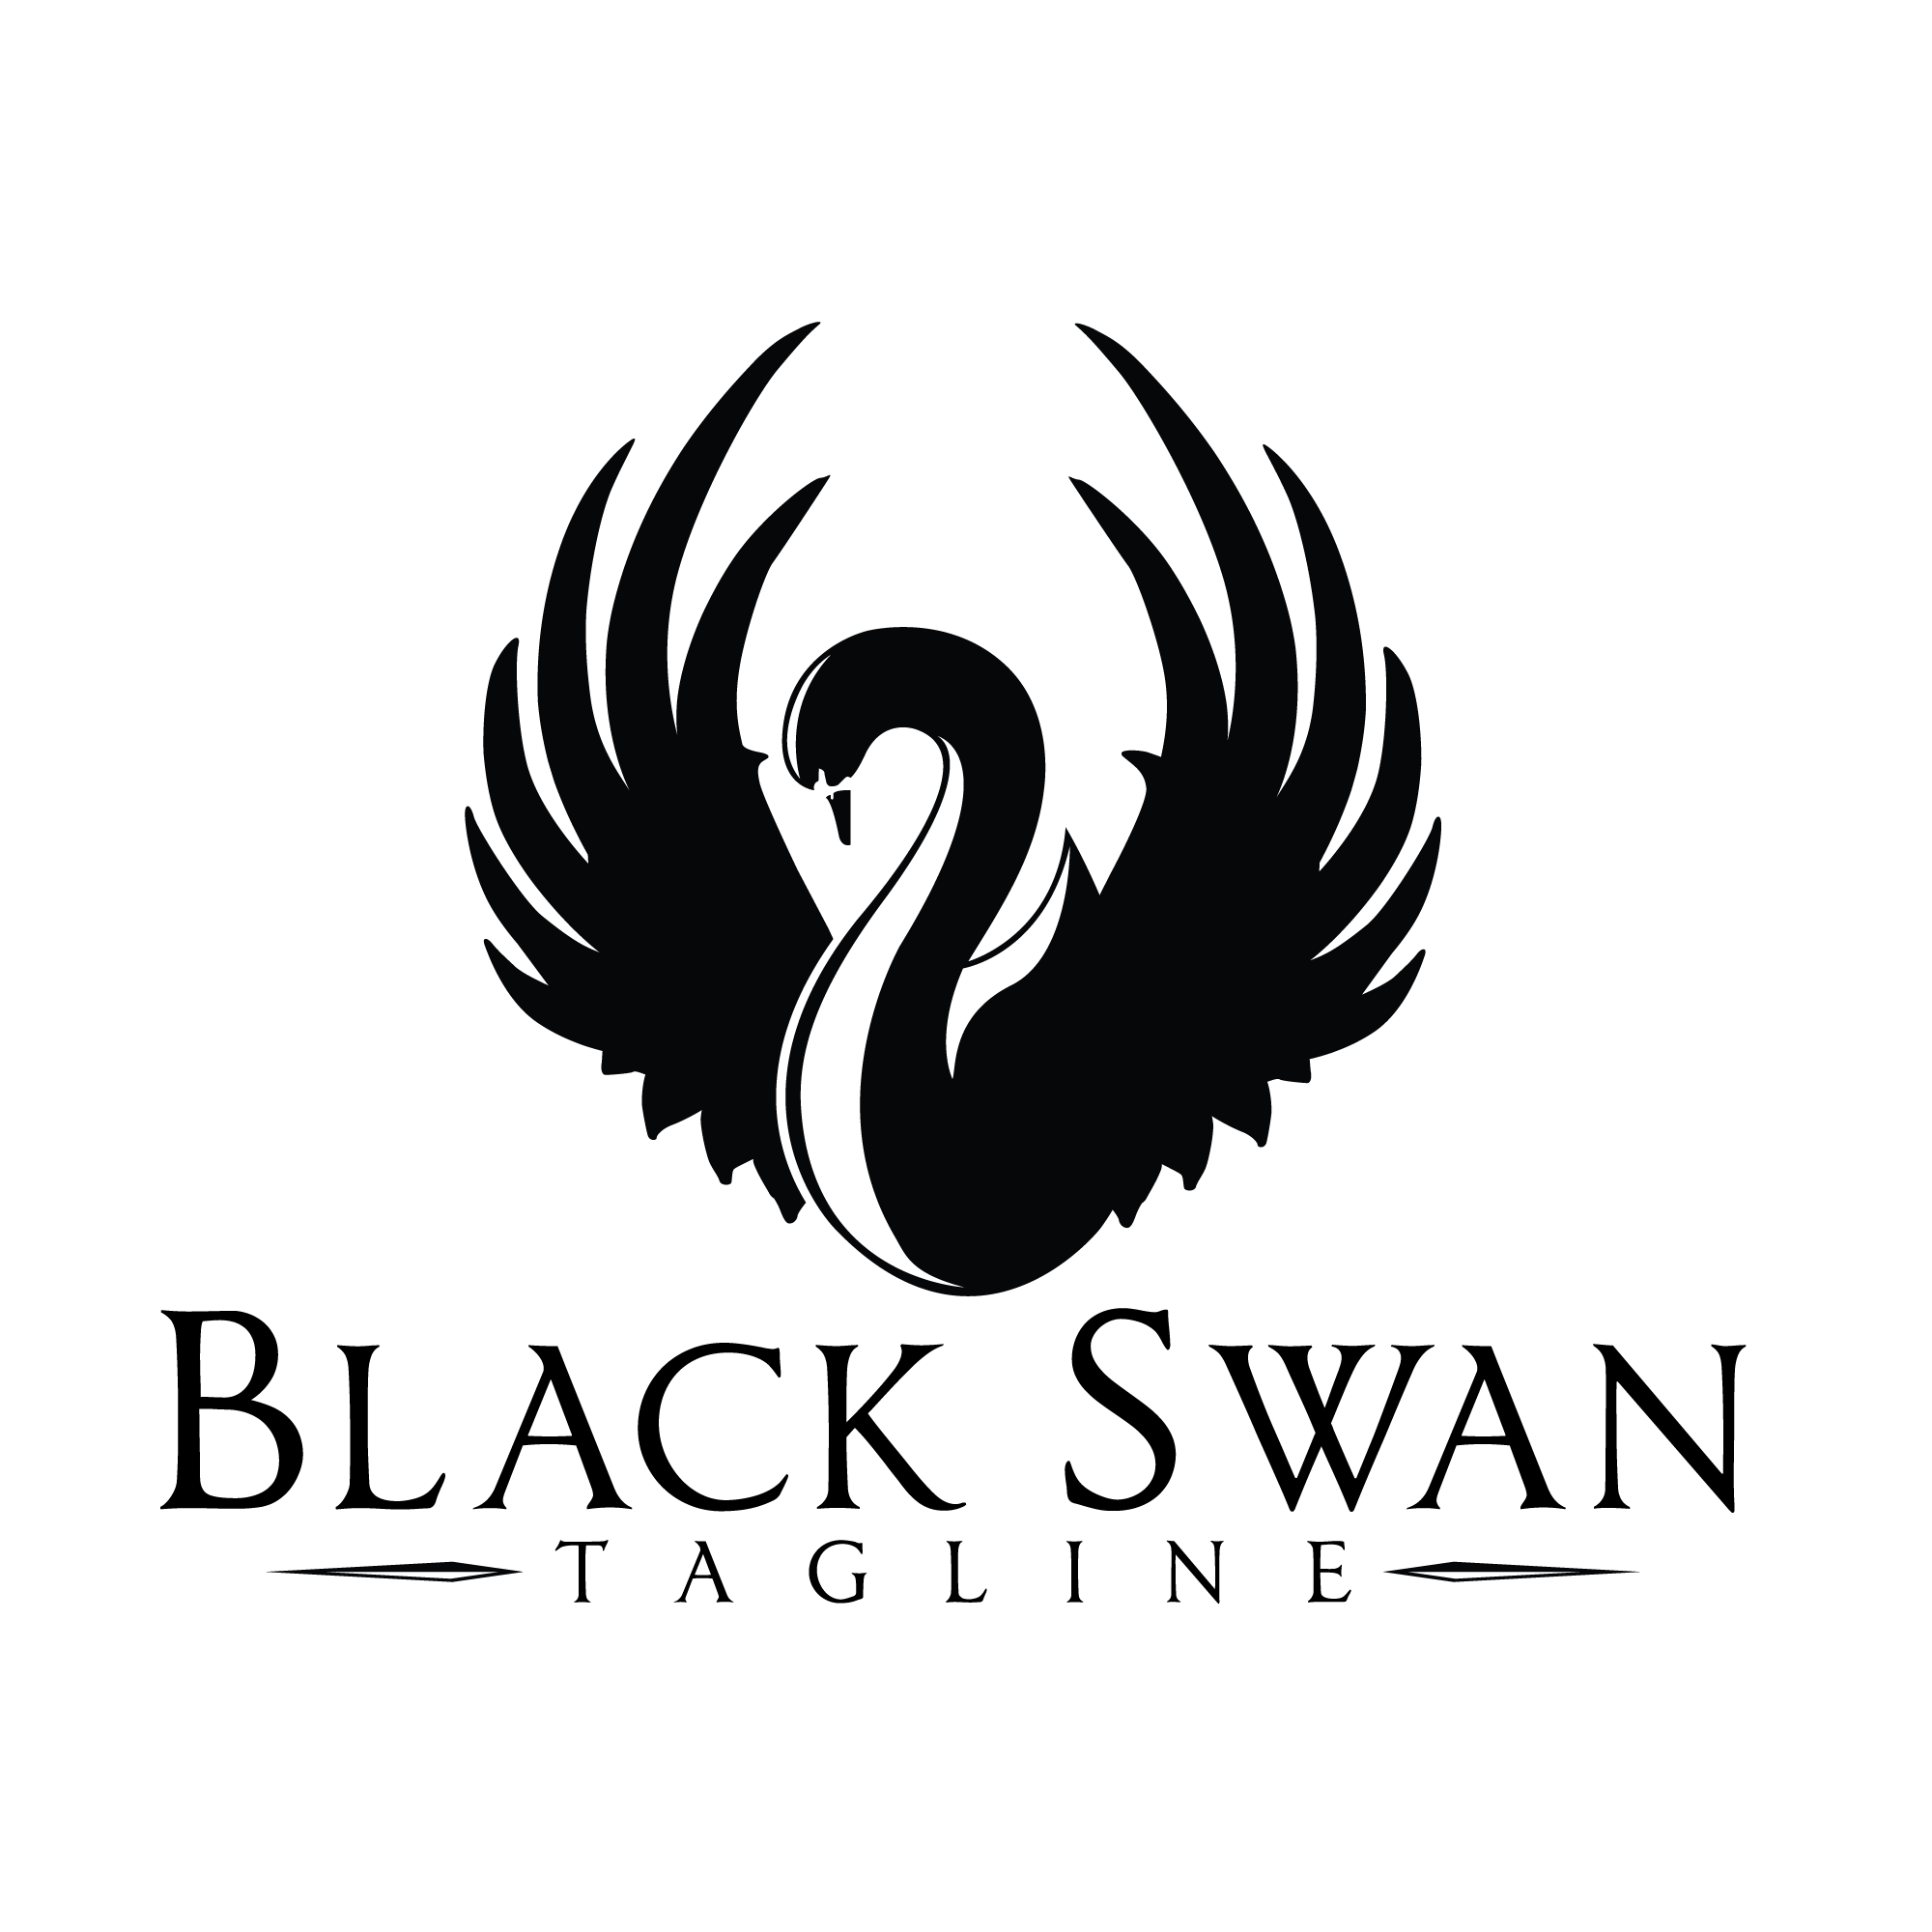 Logos with a Swan Logo - swan logo - Kleo.wagenaardentistry.com